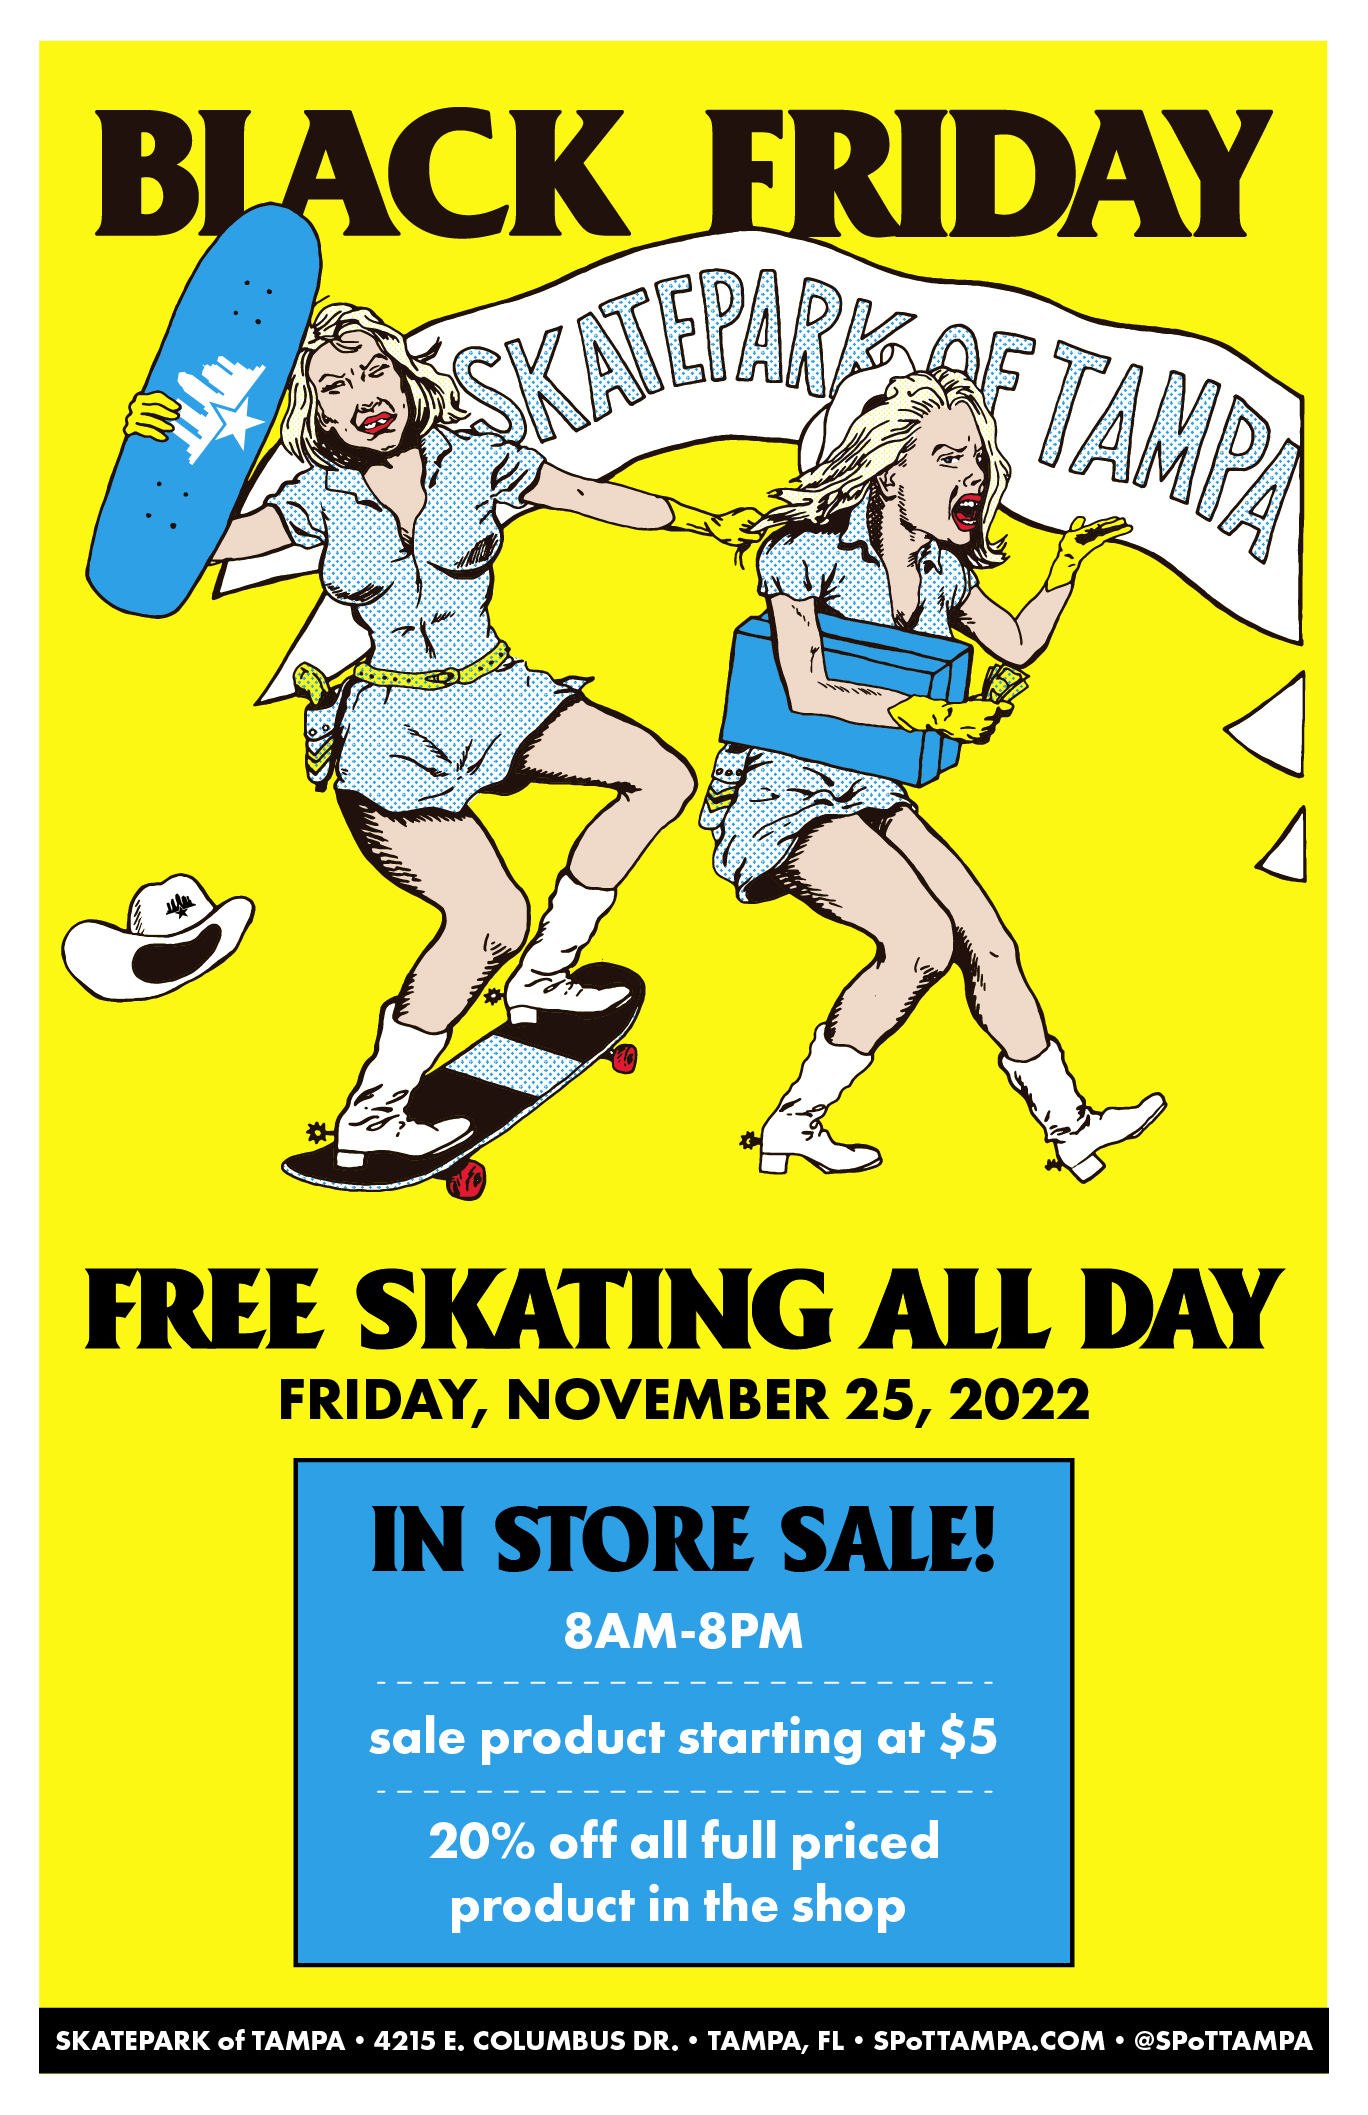 Black Friday - November 25, 2022 Article at Skatepark of Tampa